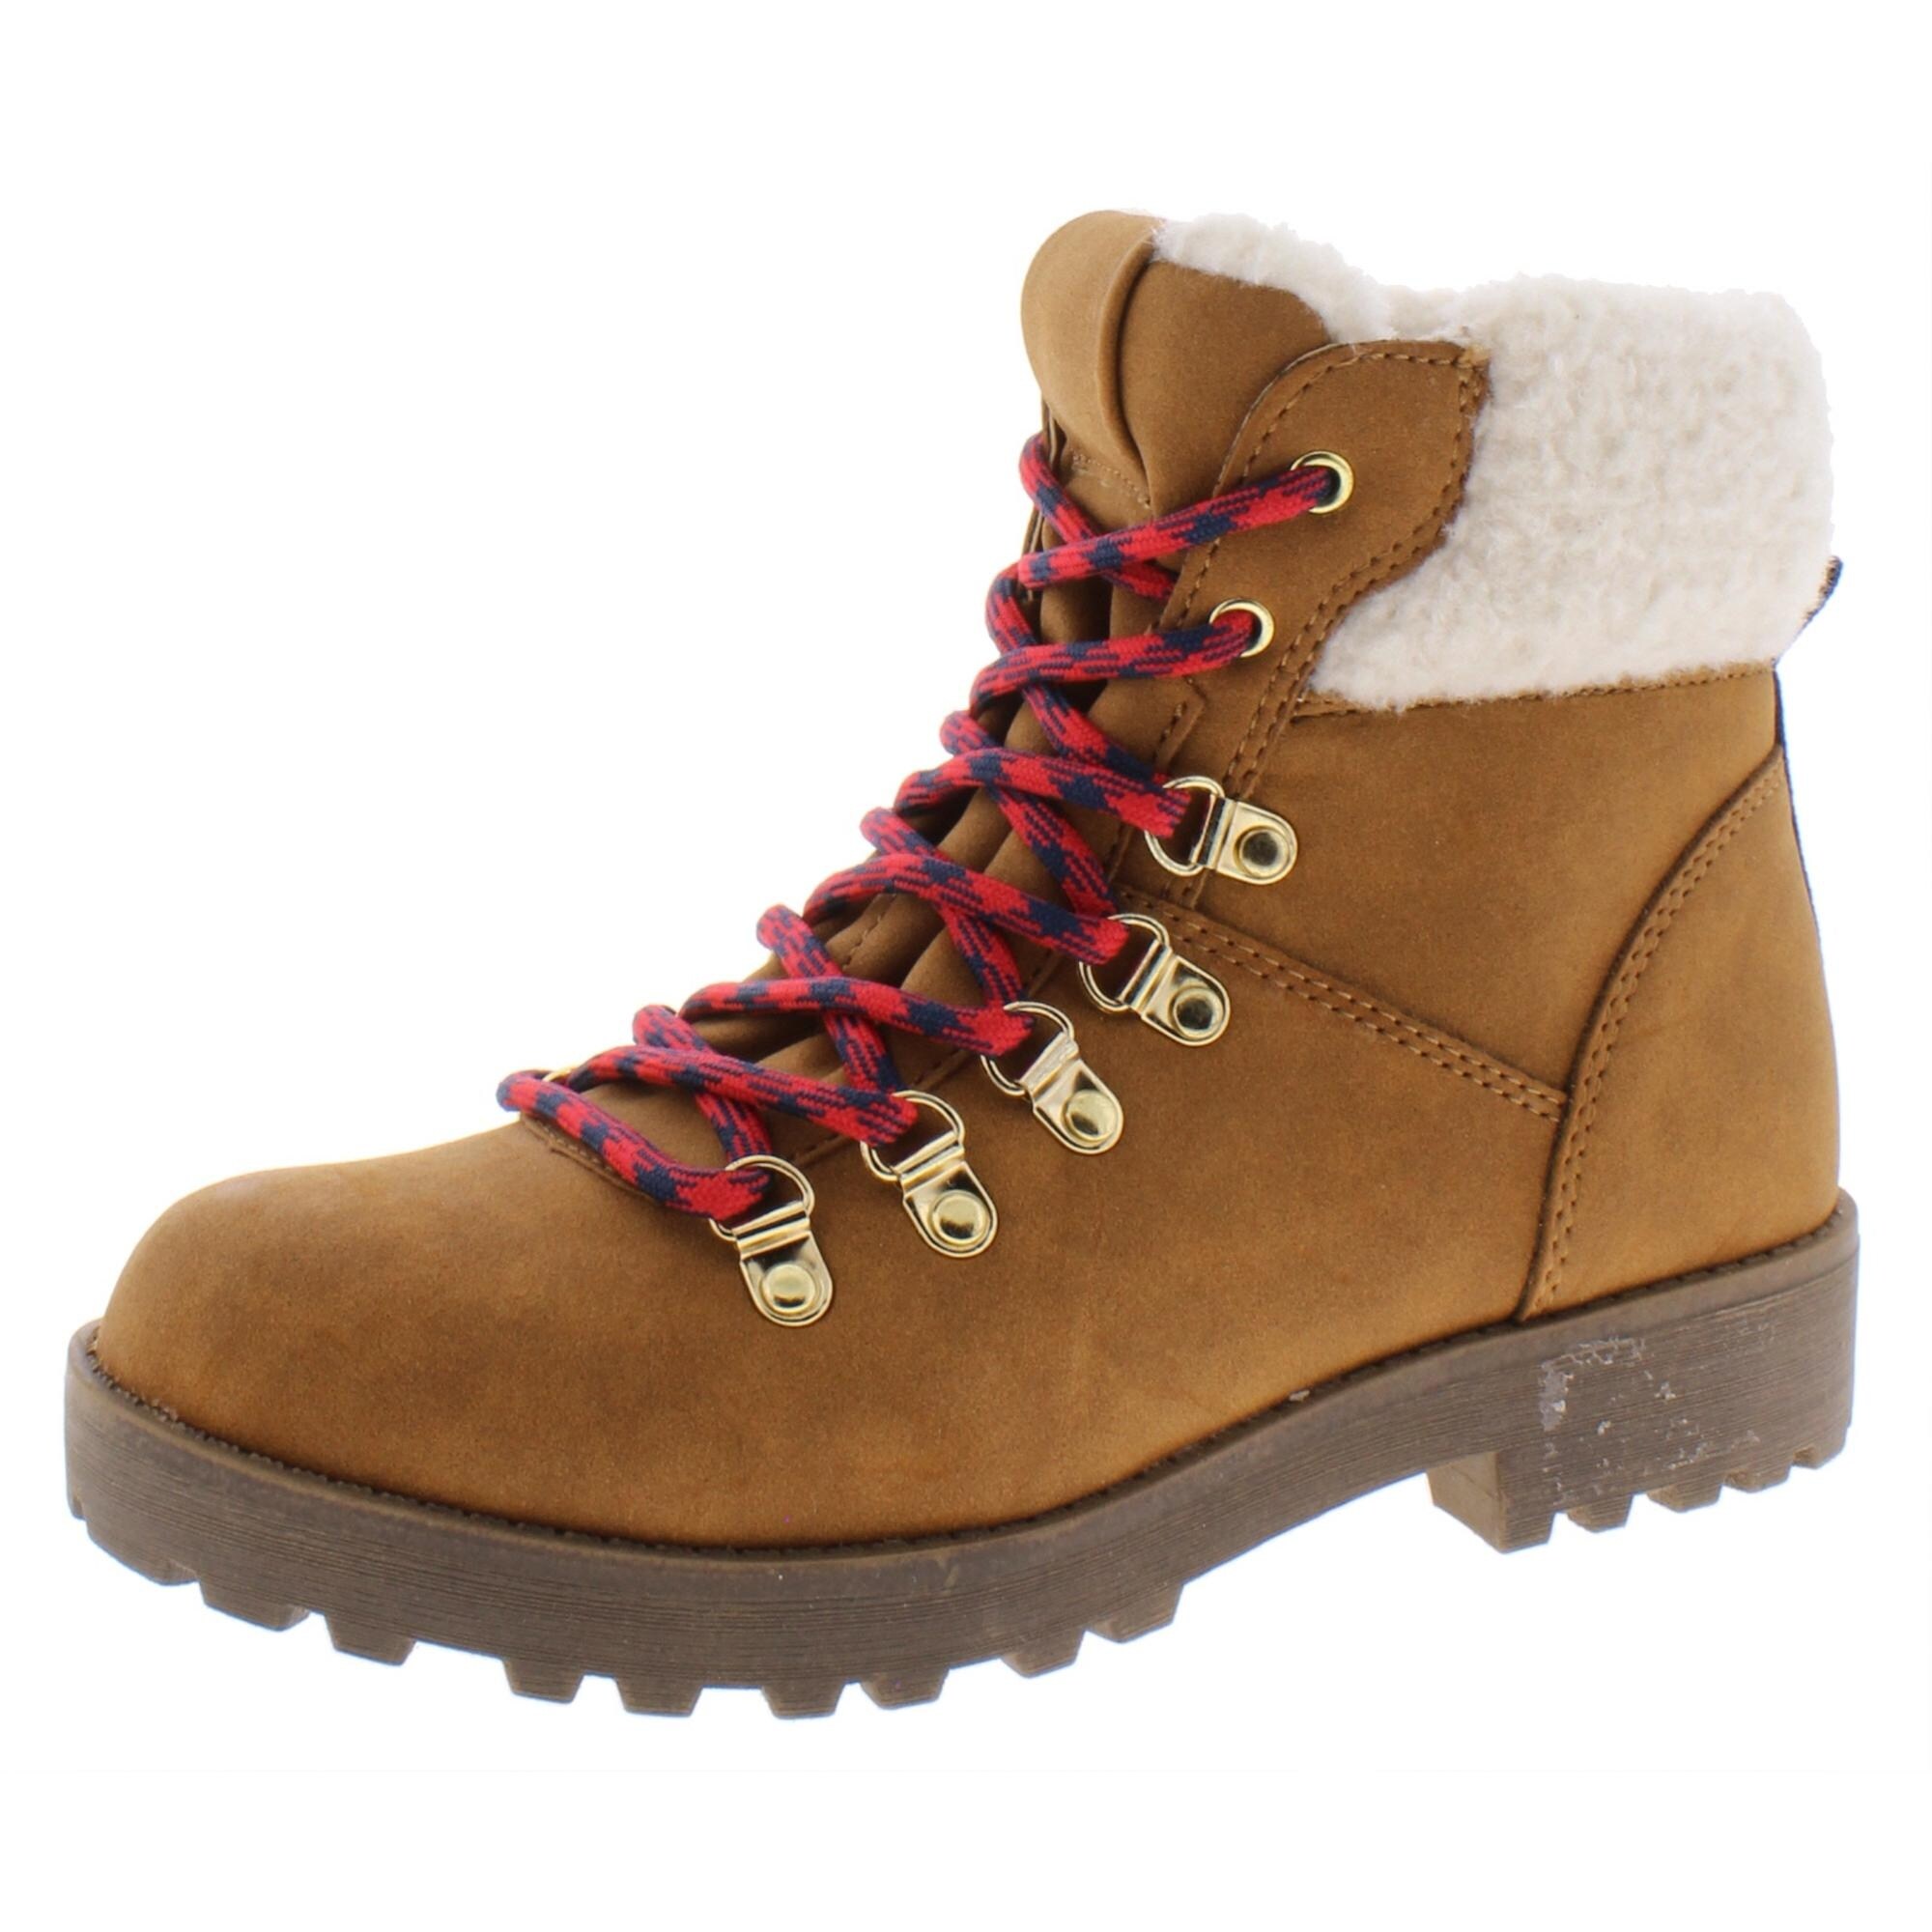 madden girl winter boots